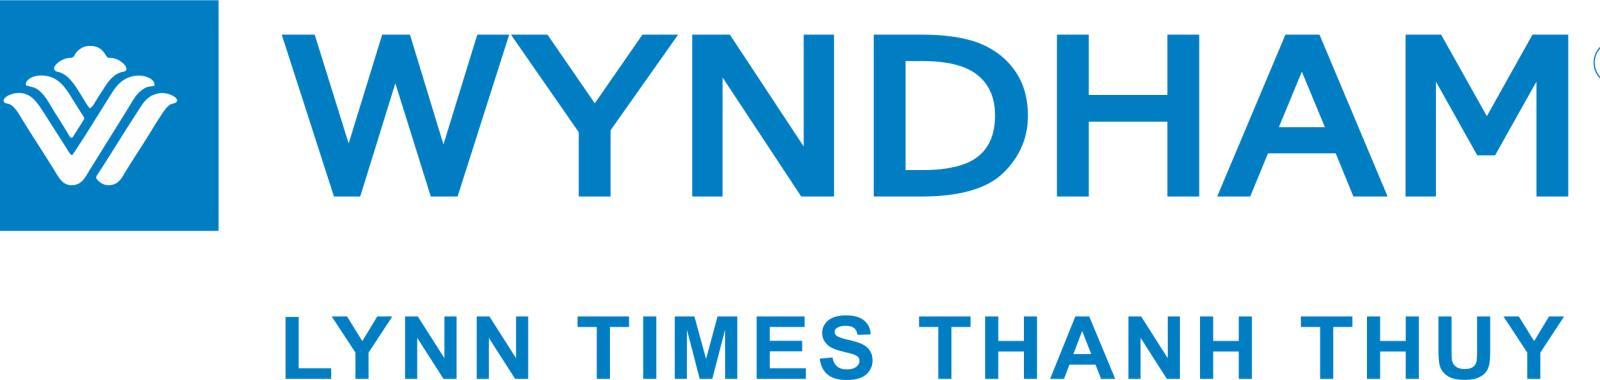 Lễ mở bán dự án Wyndham Lynn Times Thanh Thủy